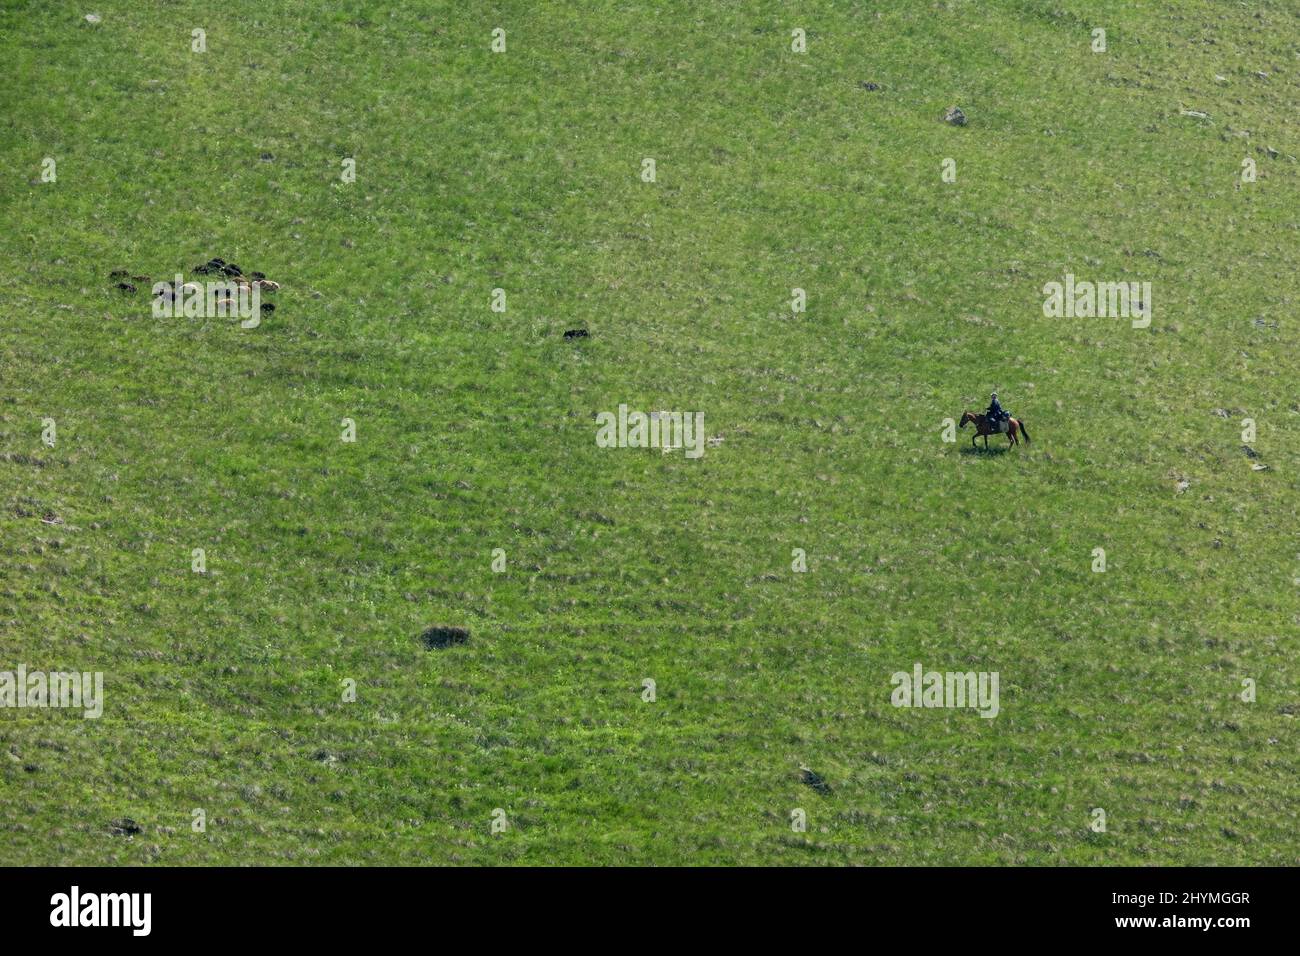 Shepherd and sheeps grazing on hills Stock Photo